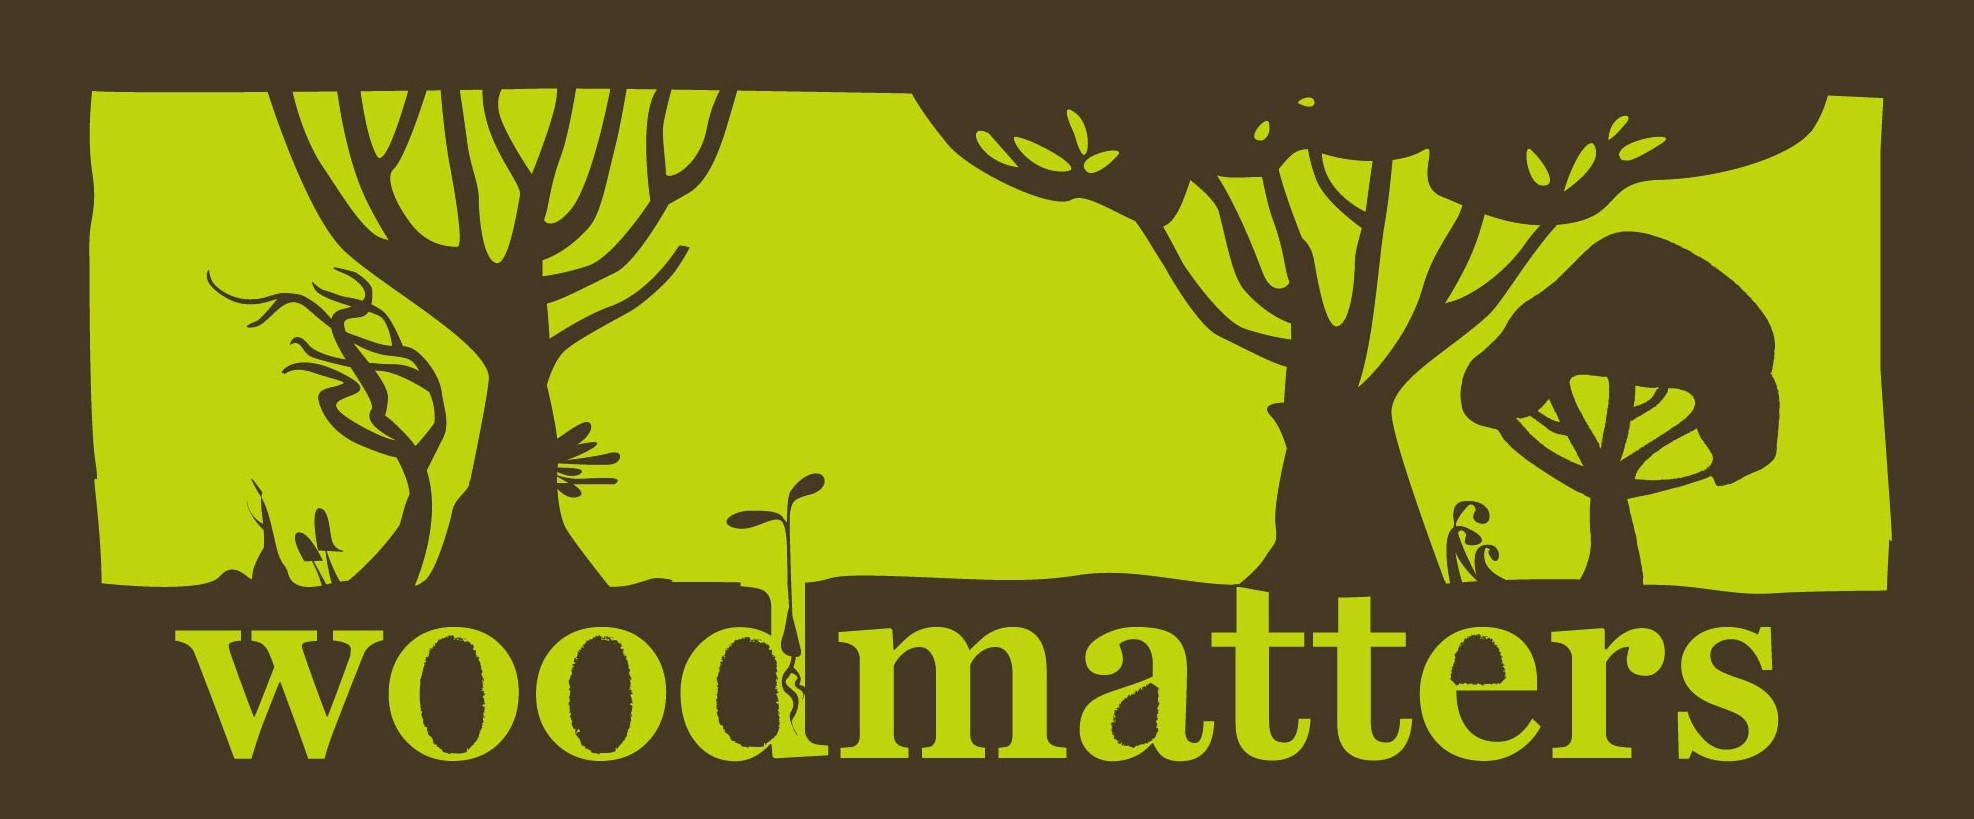 Woodmatters logo